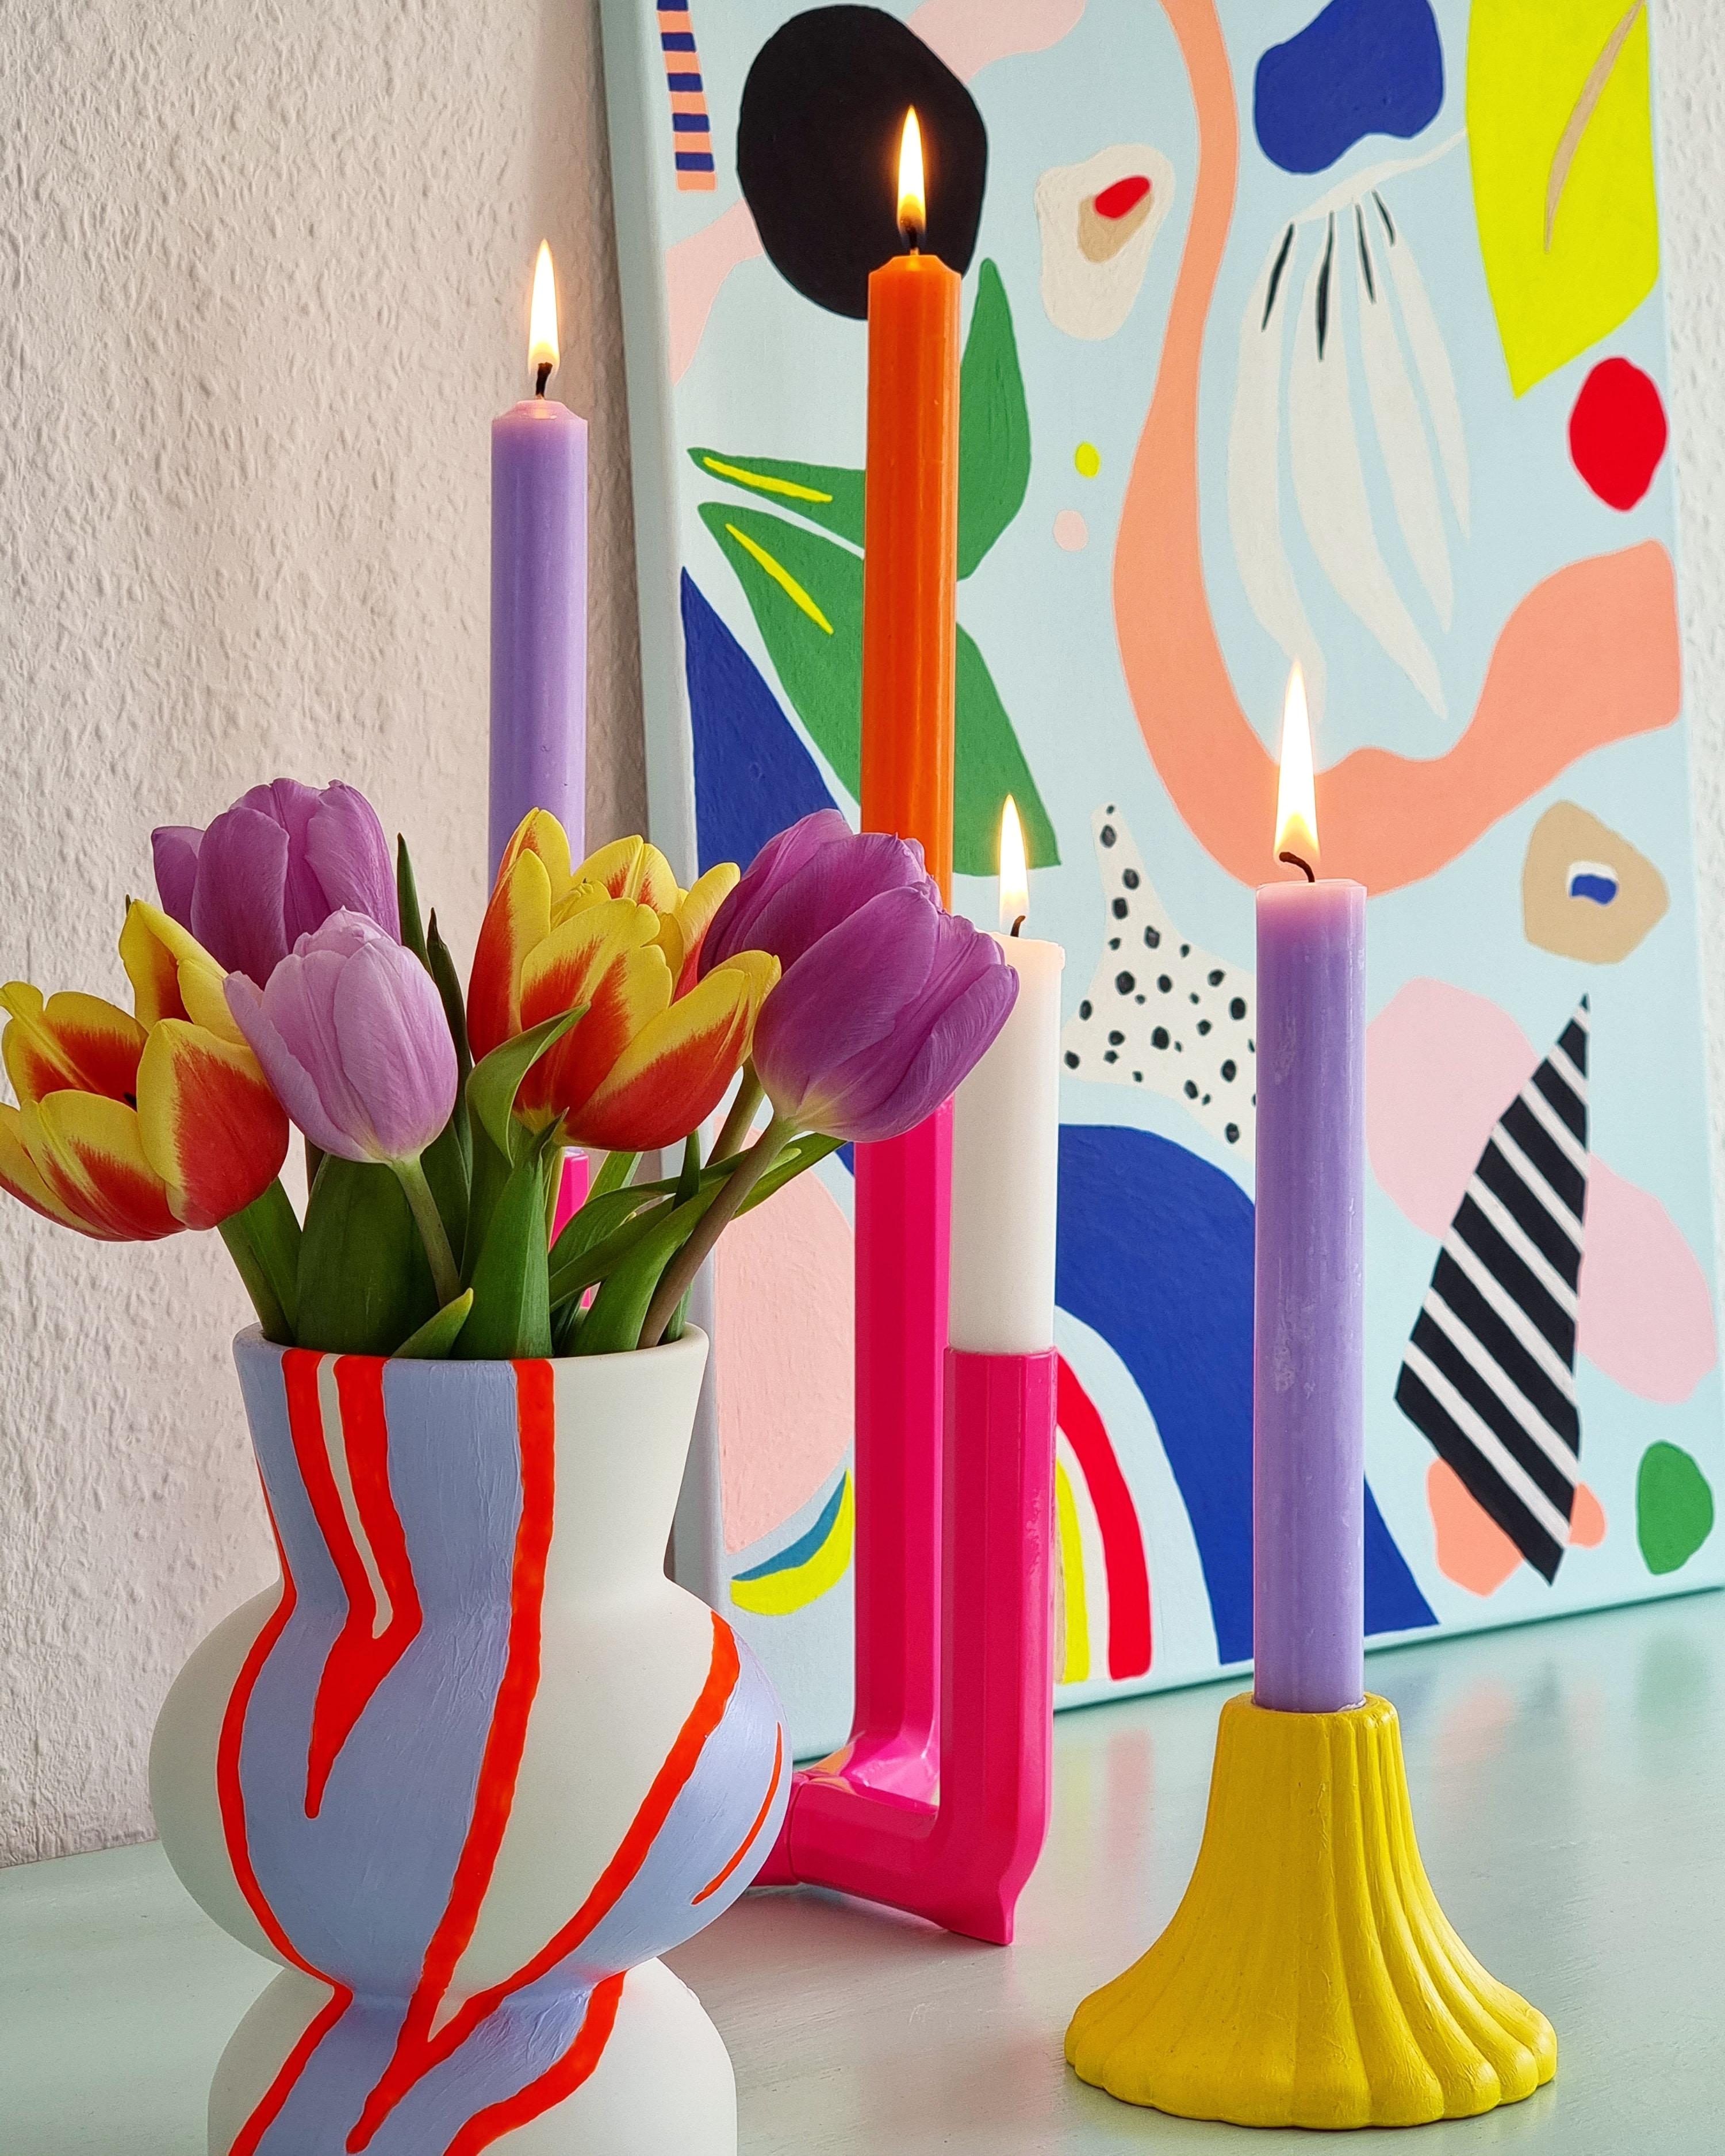 Wer hat noch Lust auf #Frühling ?#freshflowers #blumen #kerzenlicht #diy #vase #art #wohnzimmer #interior #farben #ikea 